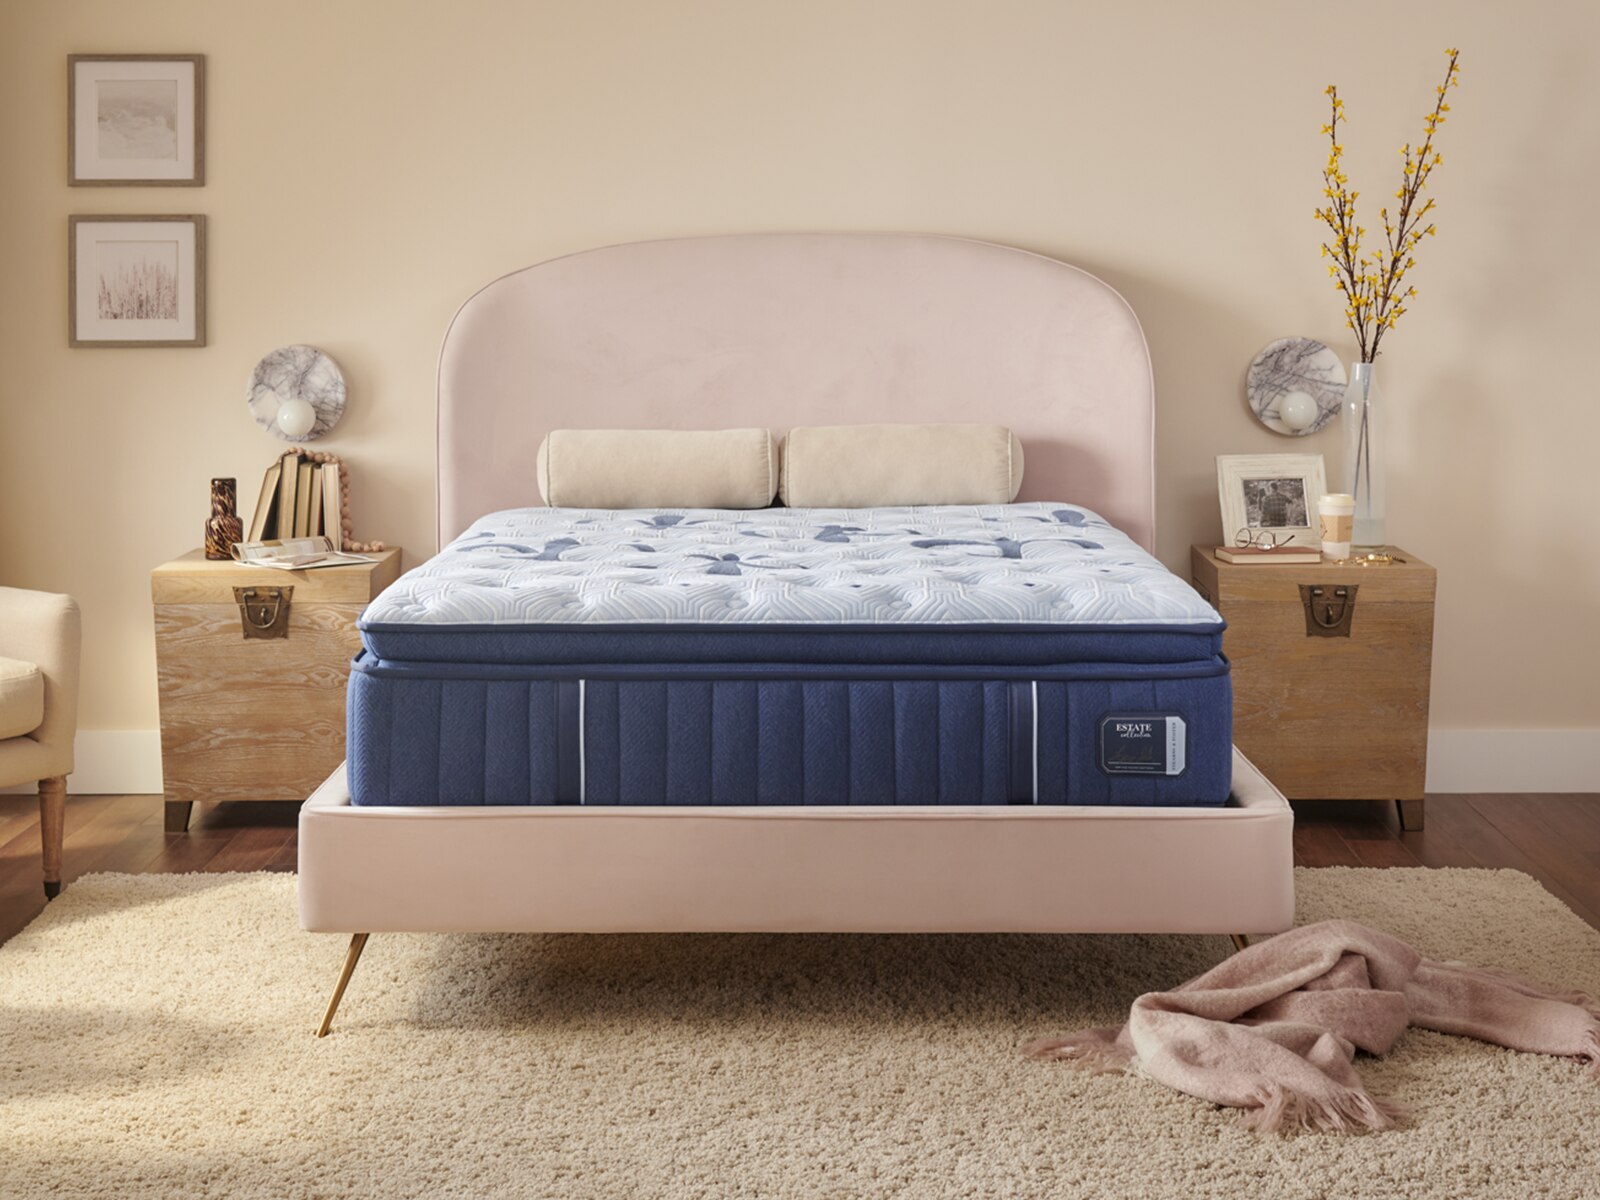 mattressfirm.com | Stearns & Foster Estate® 15" Plush Euro Pillow Top Mattress